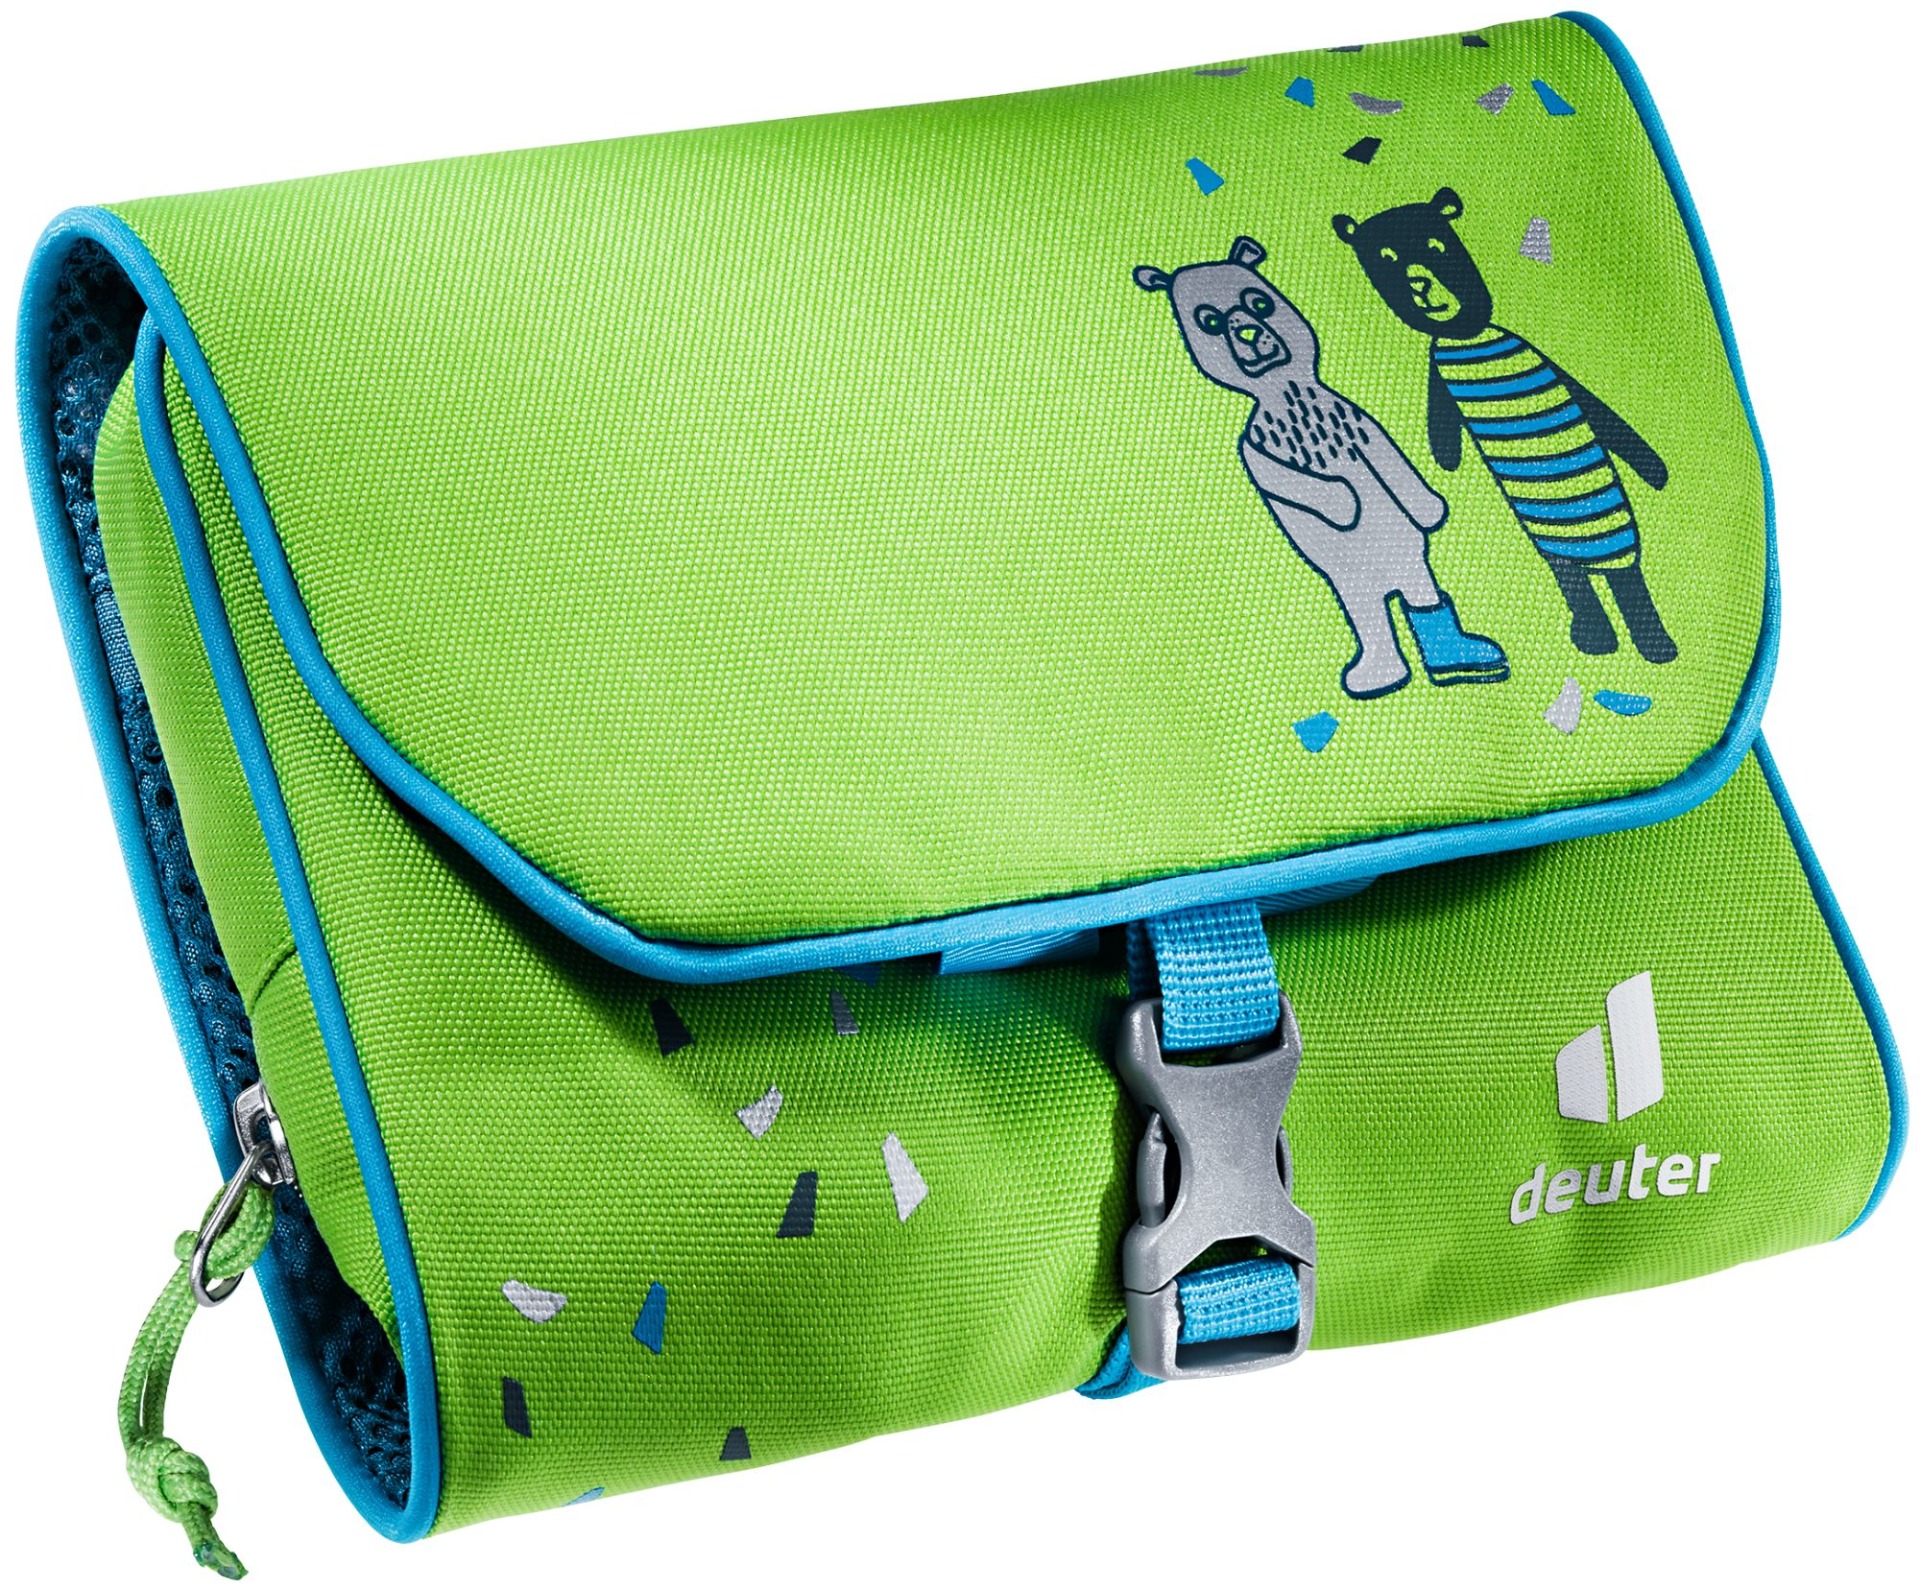 Deuter Wash Bag Kids Kiwi.

3 oddělené kapsy na zip
elastická poutka 
háček na zavěšení
zavírání na přezku